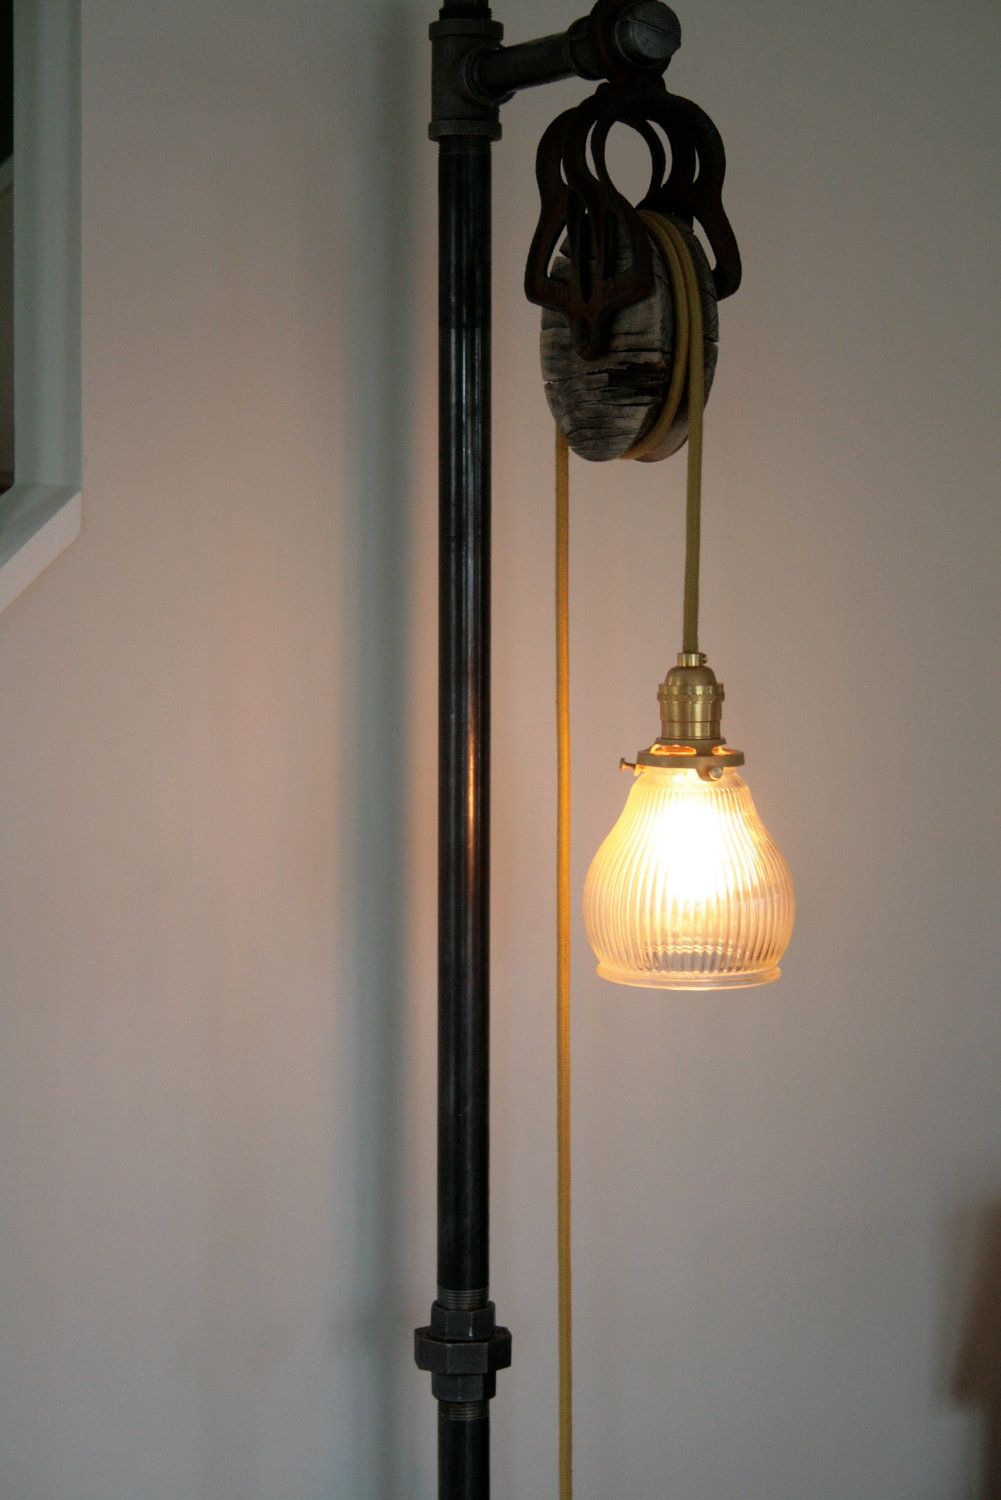 Vintage Industrial Floor Lamp 34500 Via Etsy inside dimensions 1001 X 1500